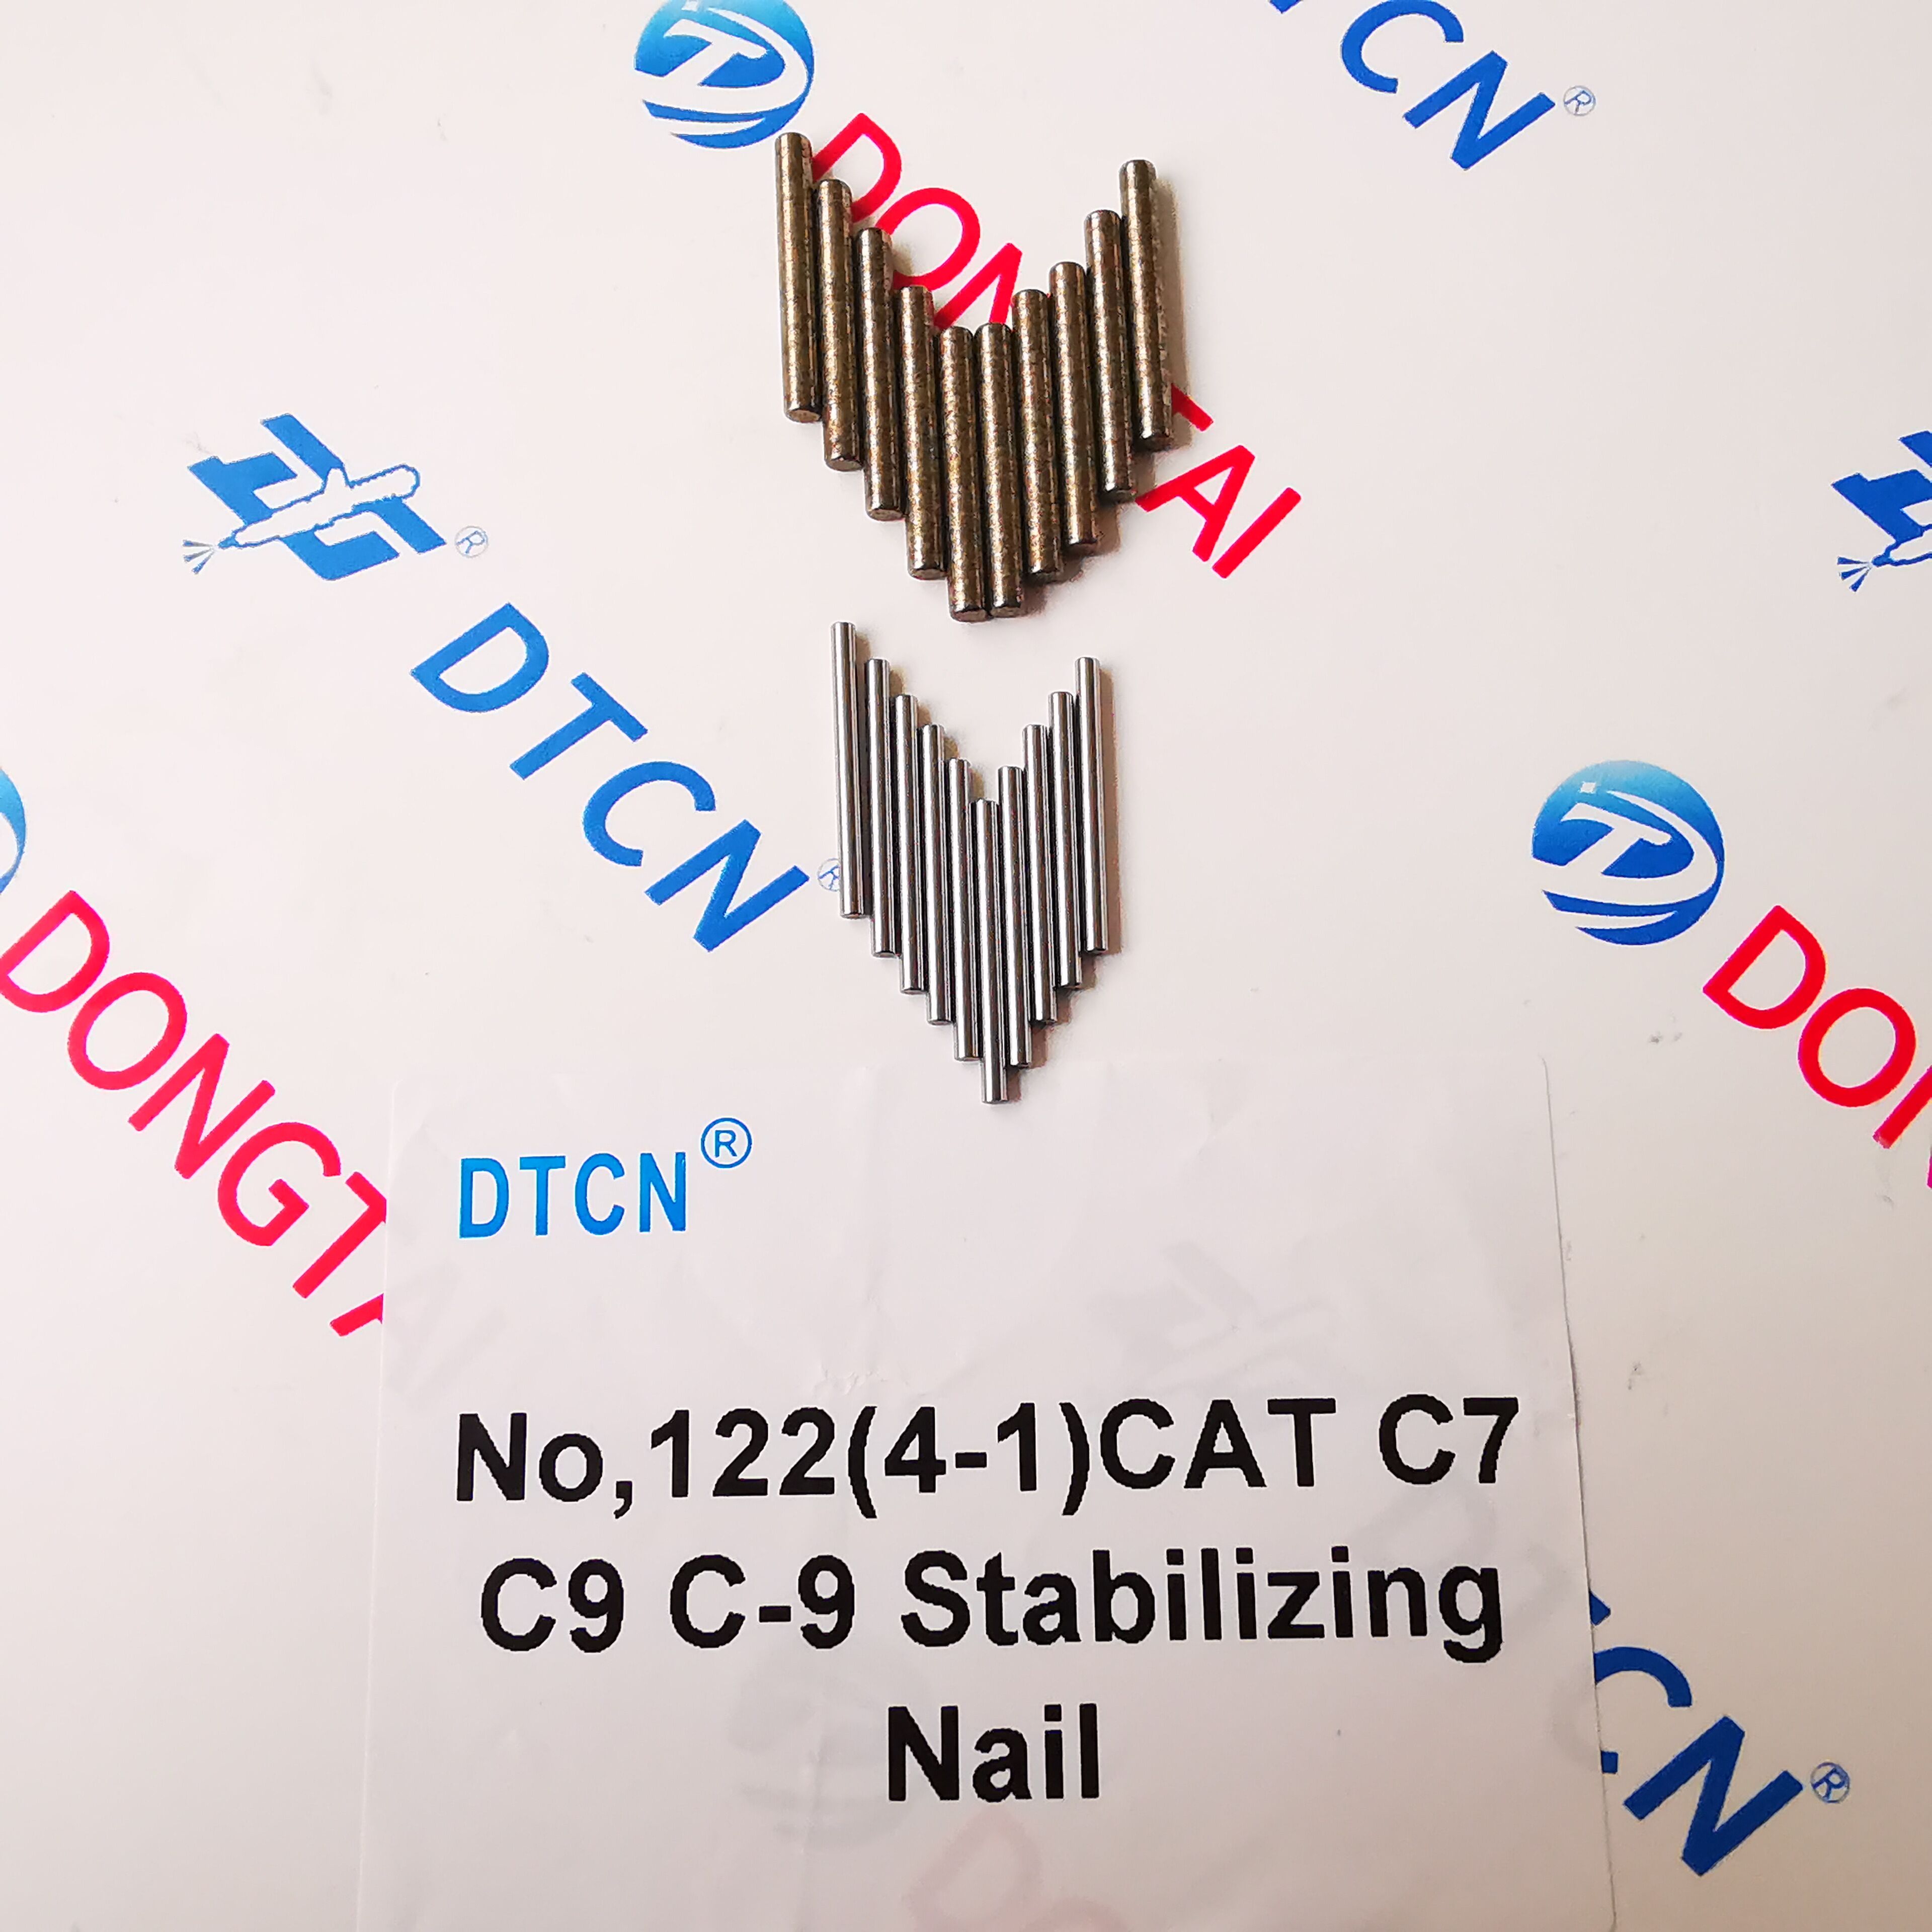 NO.122(4-1) CAT C7 C9 C-9 Stabilizing Nail